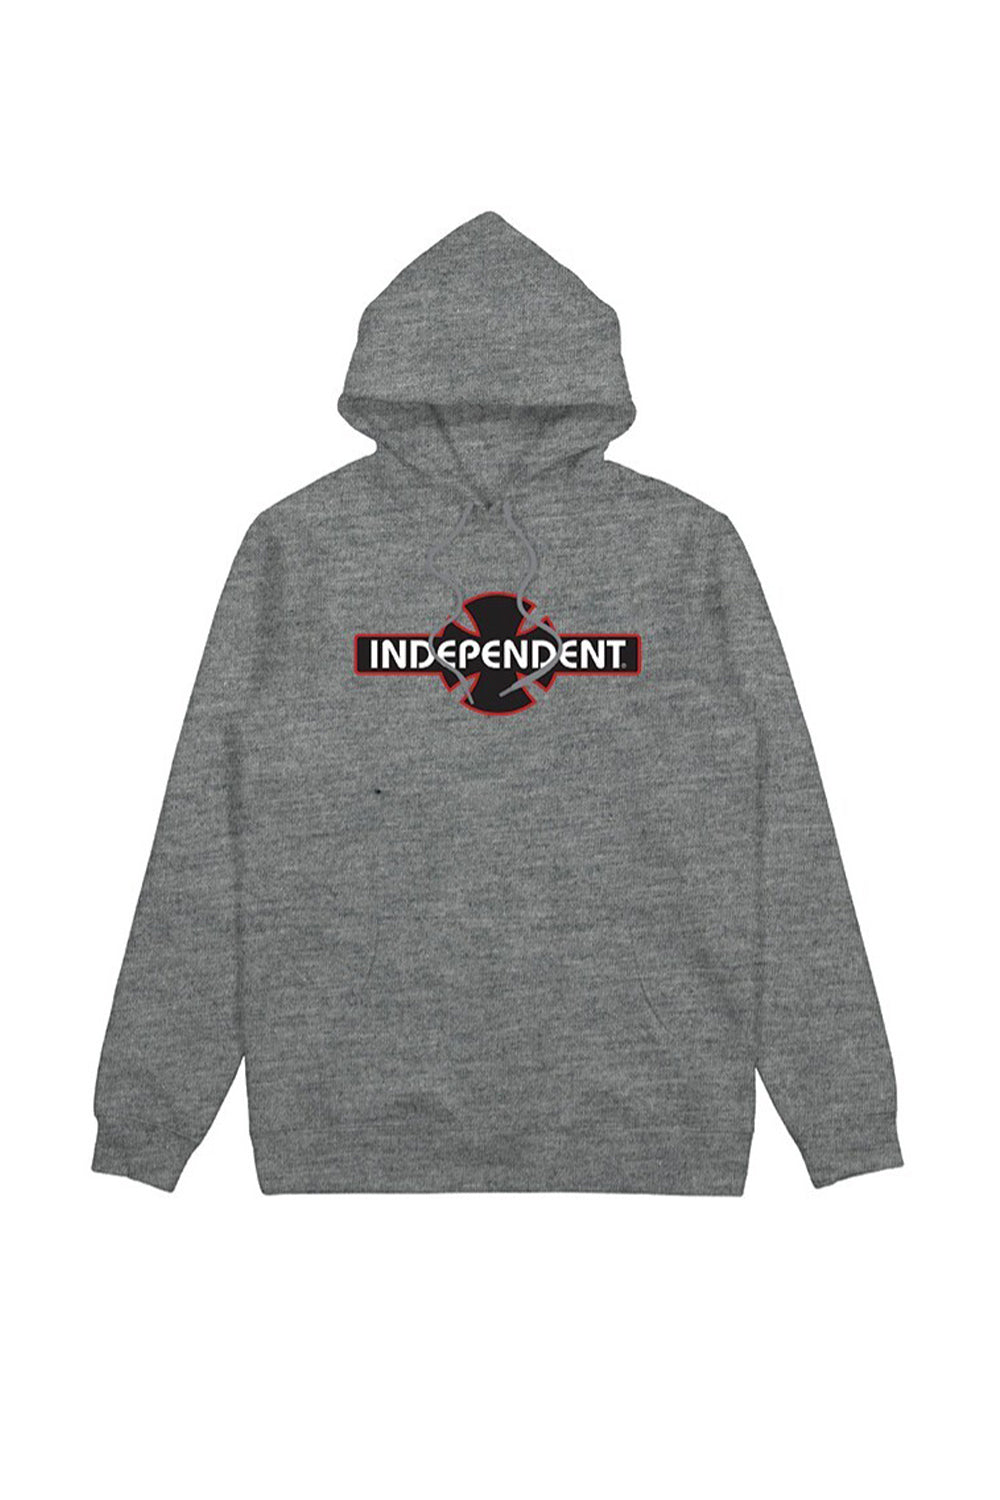 Independent OG Bar Cross Youth Pop Hood - Grey